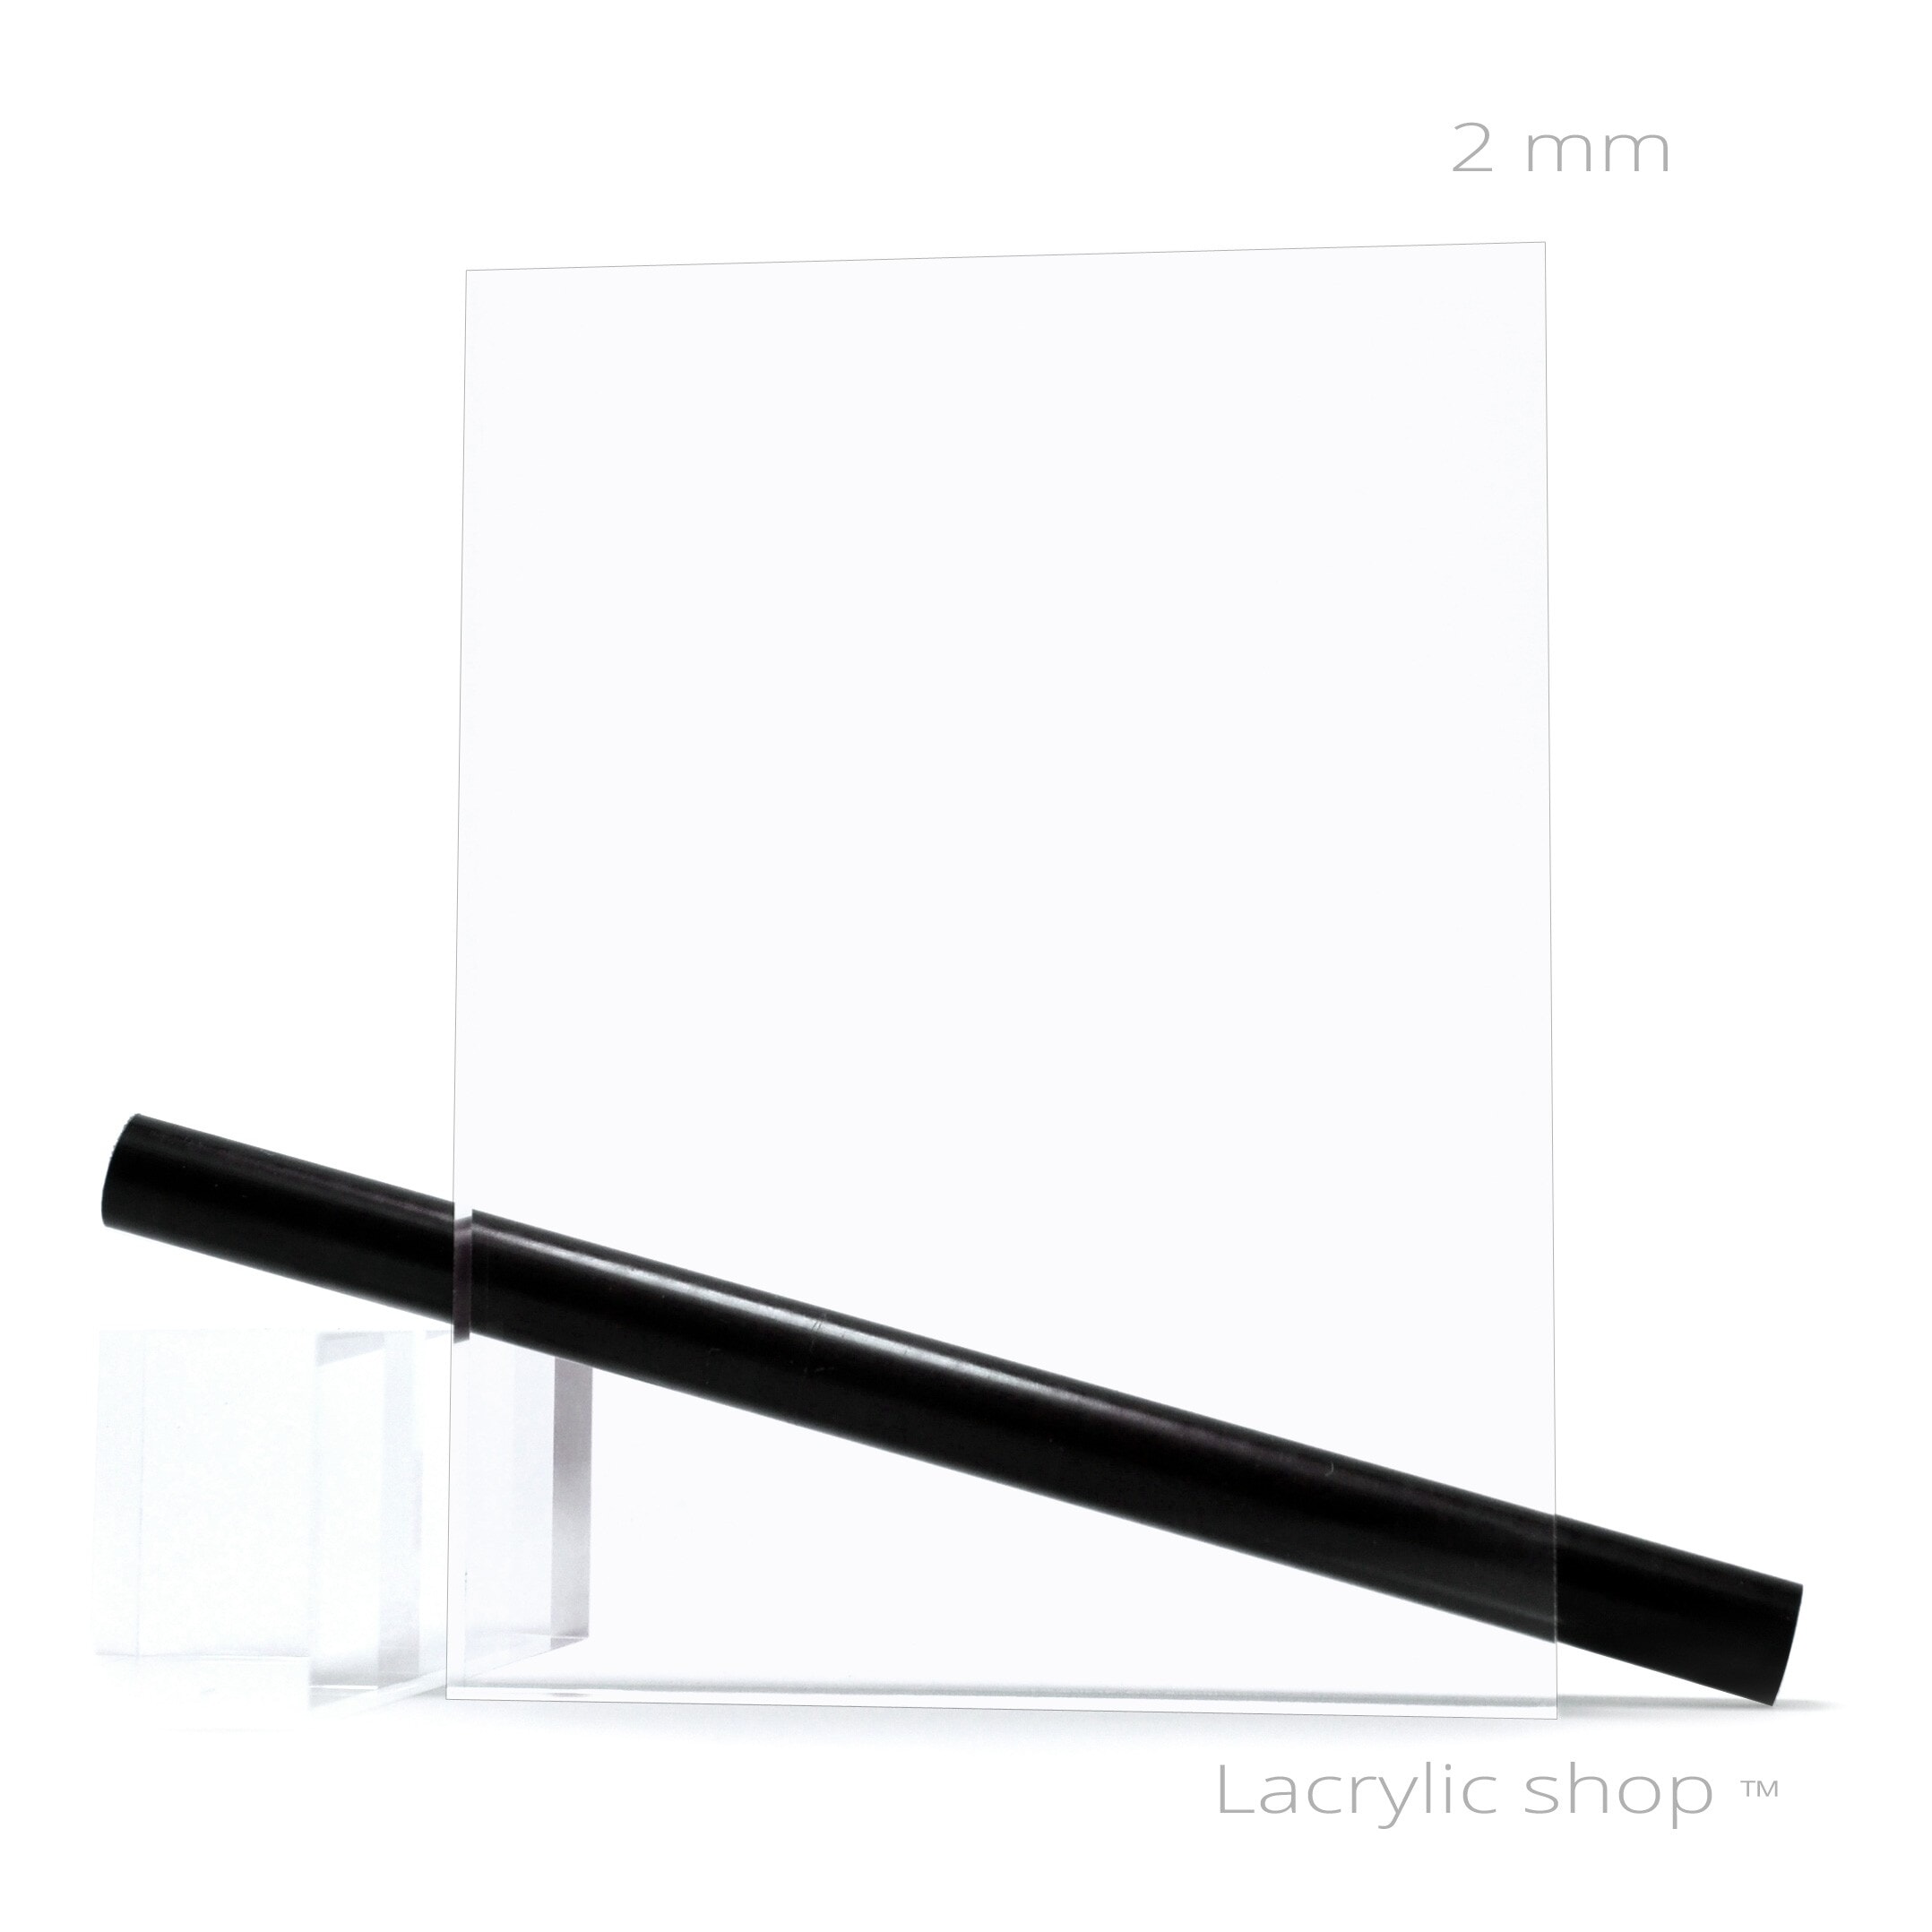 Découpe de Plaque Plexiglass Transparent Economique (Extrudé) 70x50cm